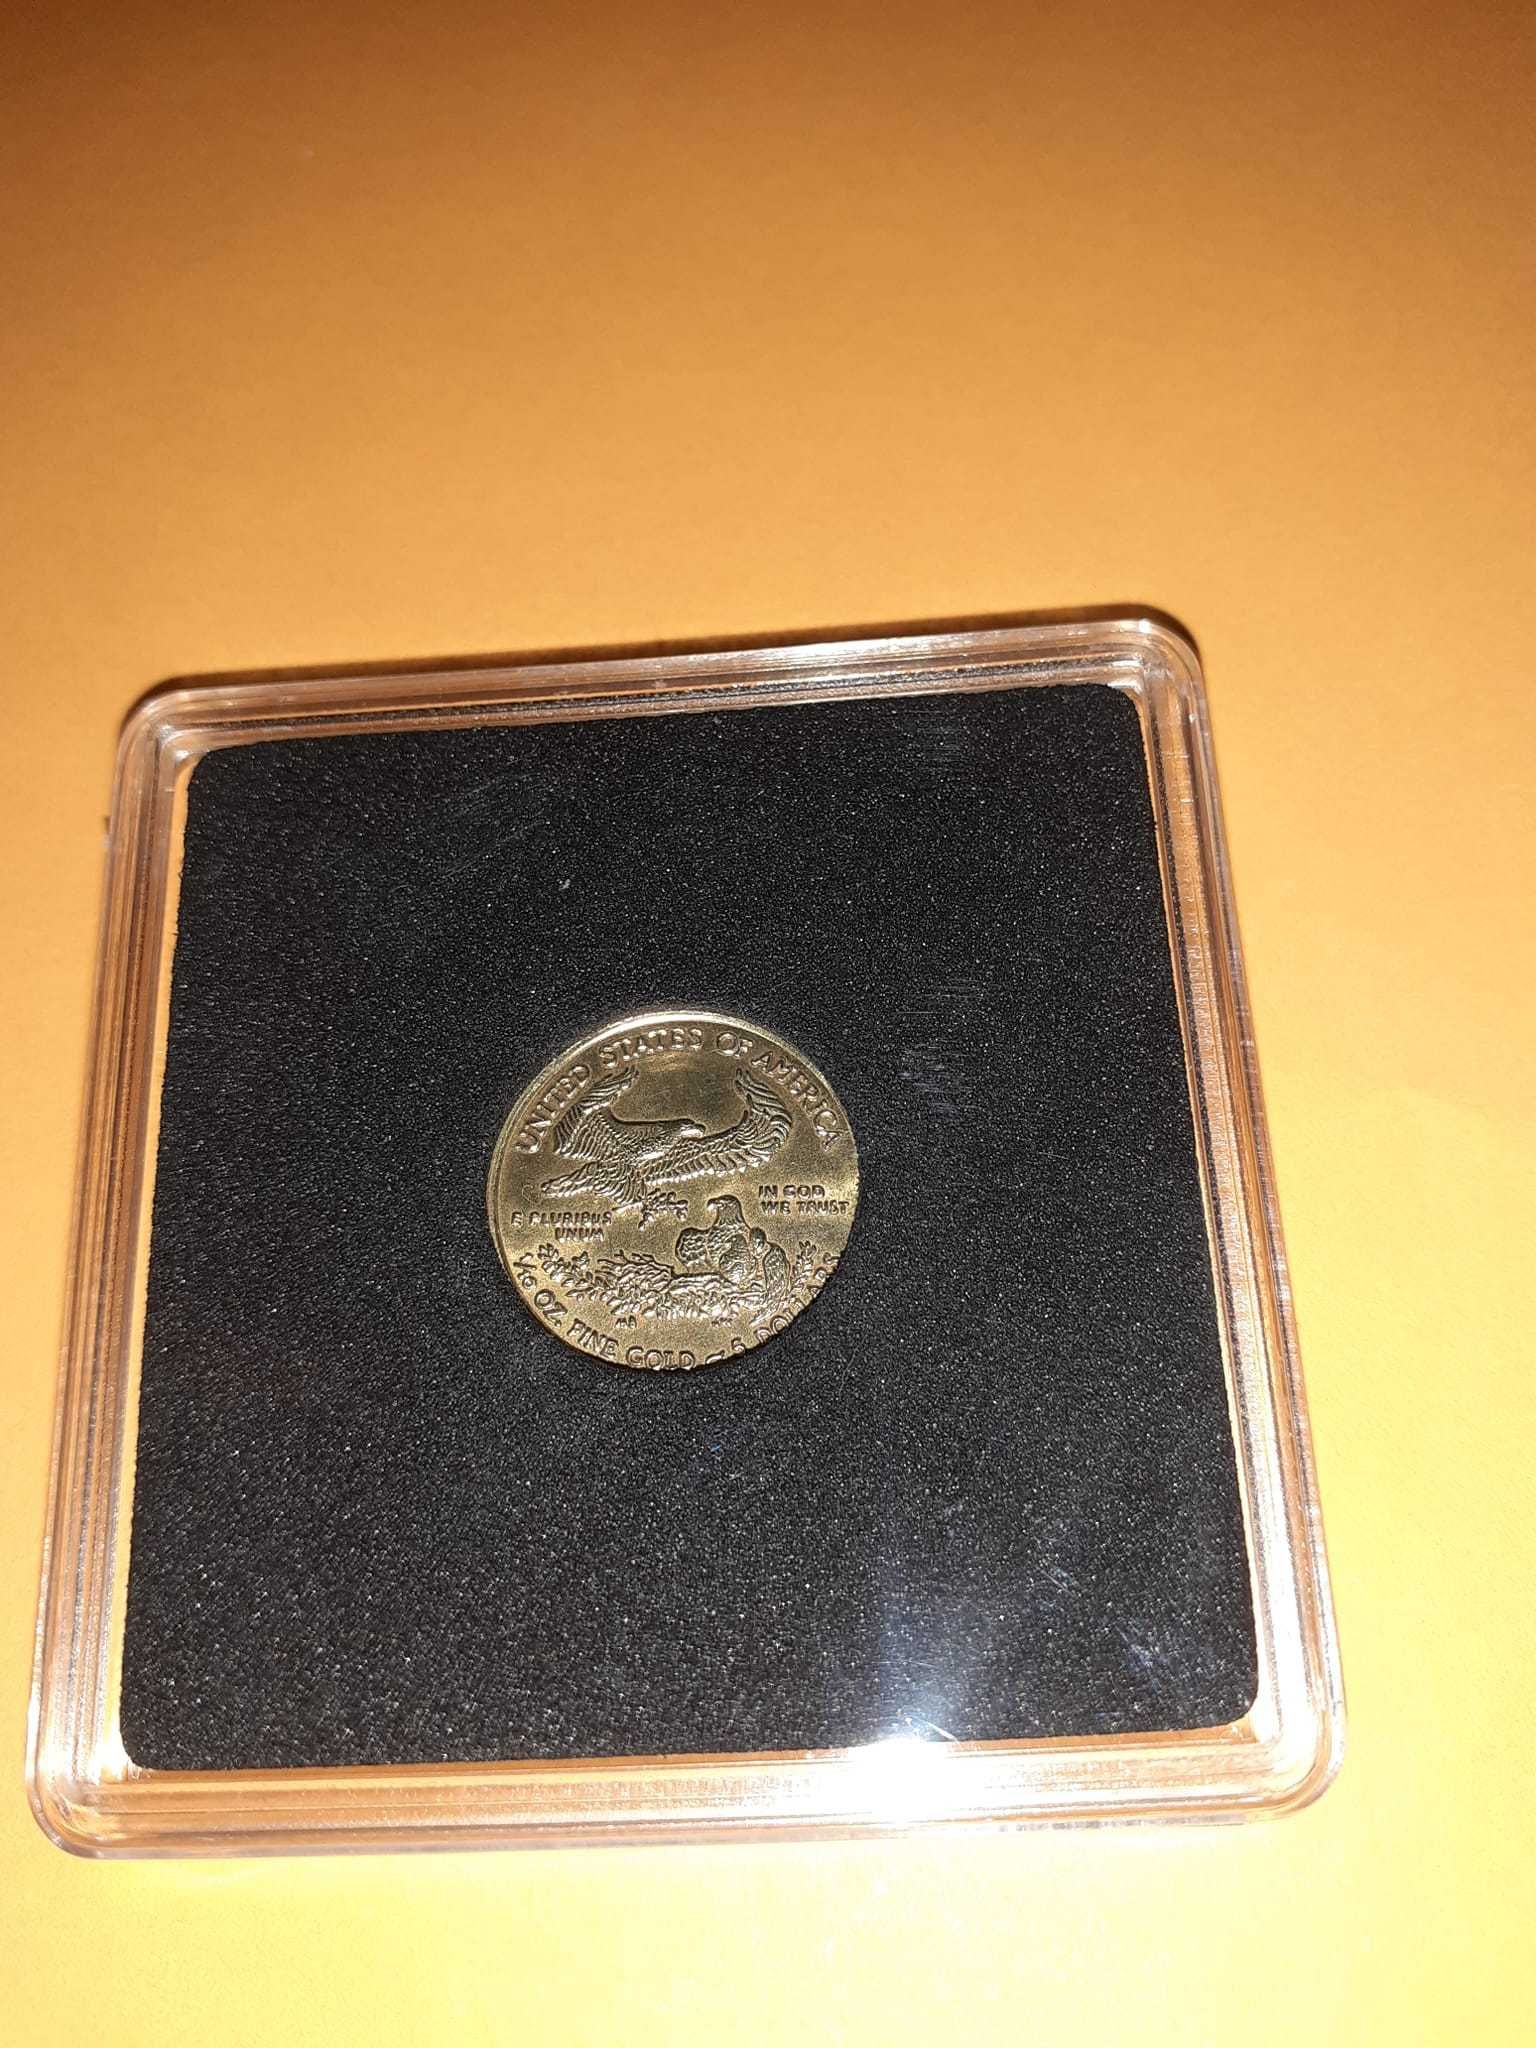 Moneda prezentare 1/10 oz de 5 dolari 2010 "American Gold Eagle" Type1